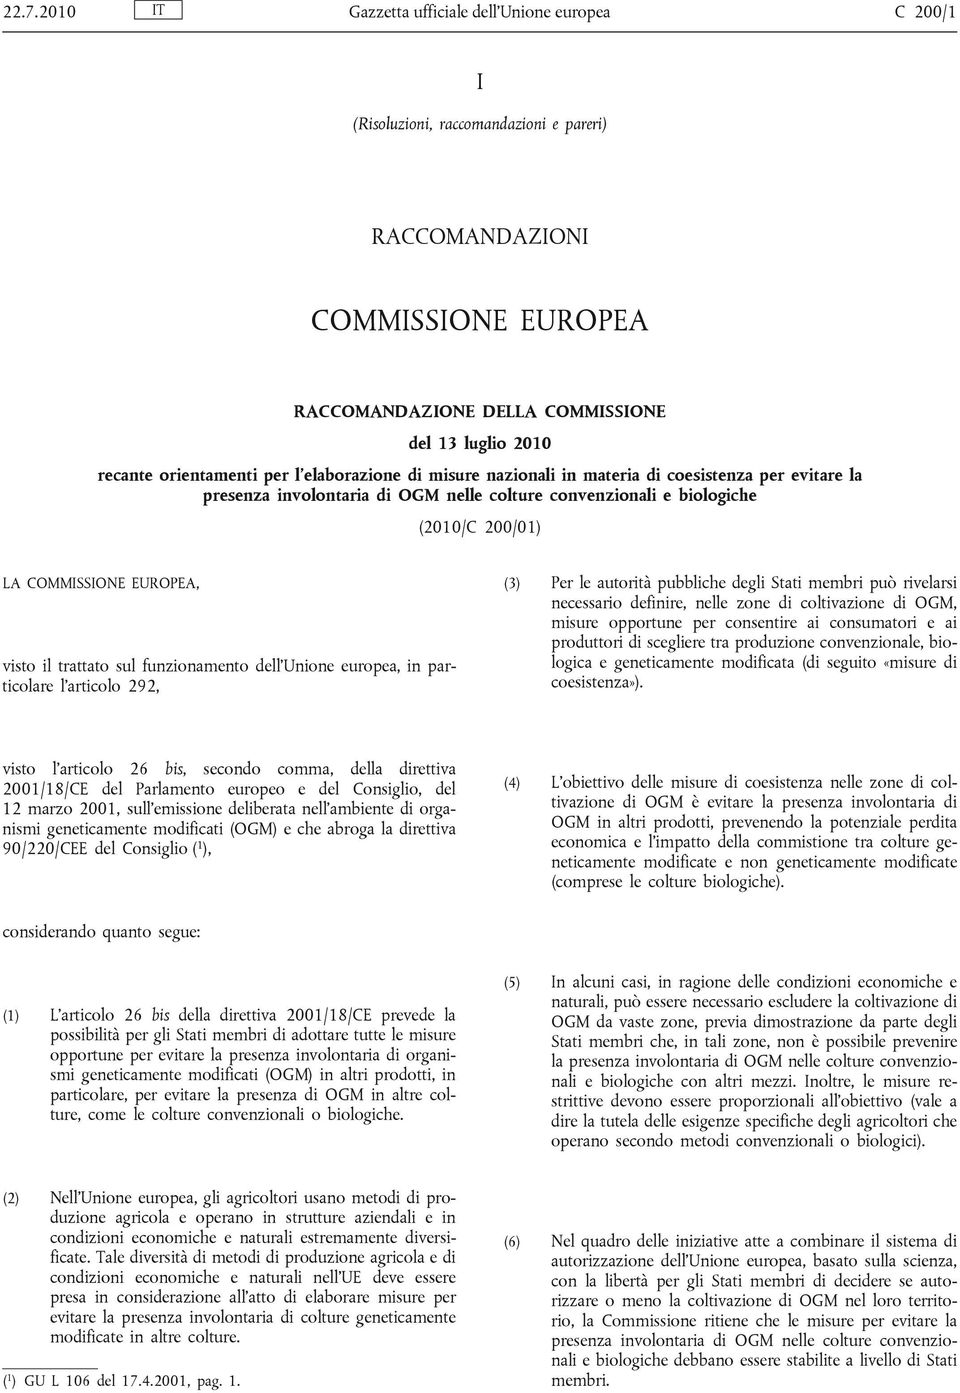 EUROPEA, visto il trattato sul funzionamento dell'unione europea, in particolare l'articolo 292, (3) Per le autorità pubbliche degli Stati membri può rivelarsi necessario definire, nelle zone di